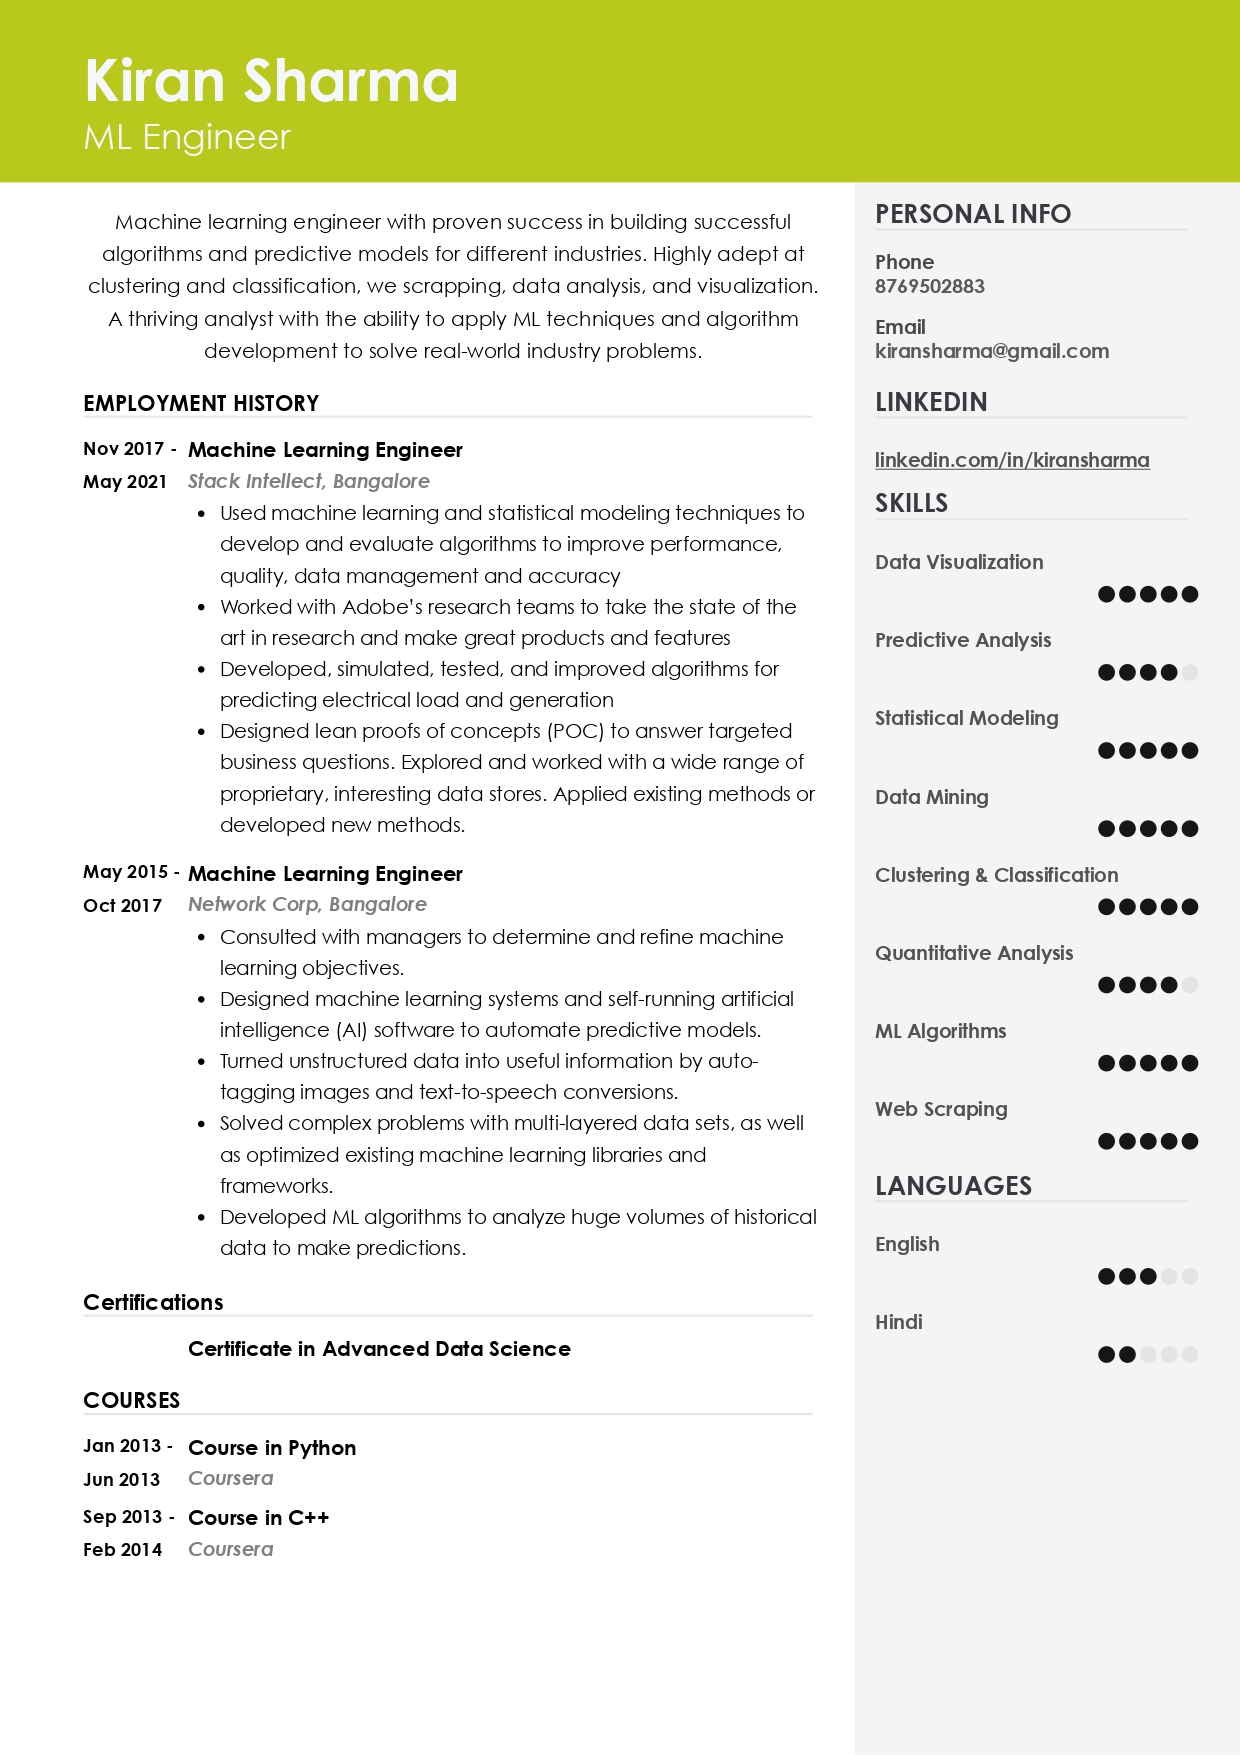 Resume of ML Engineer